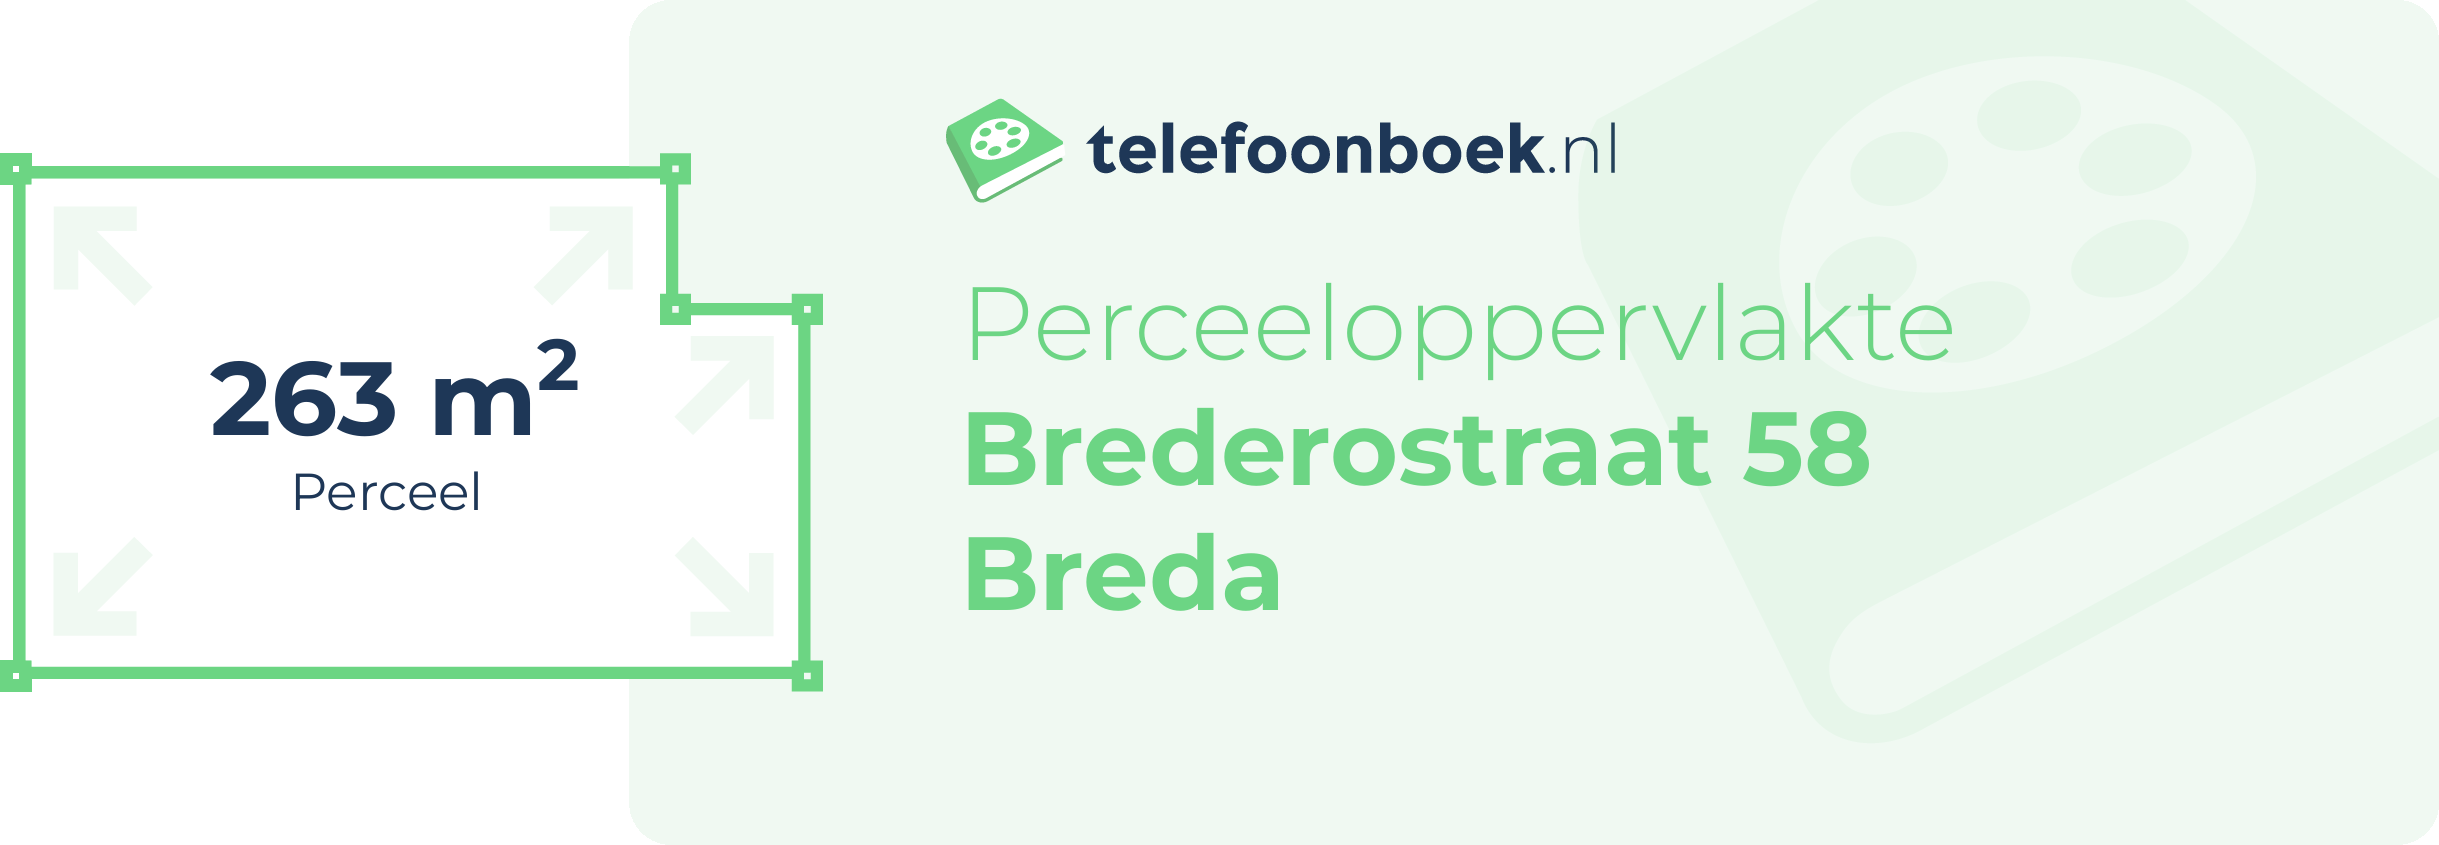 Perceeloppervlakte Brederostraat 58 Breda